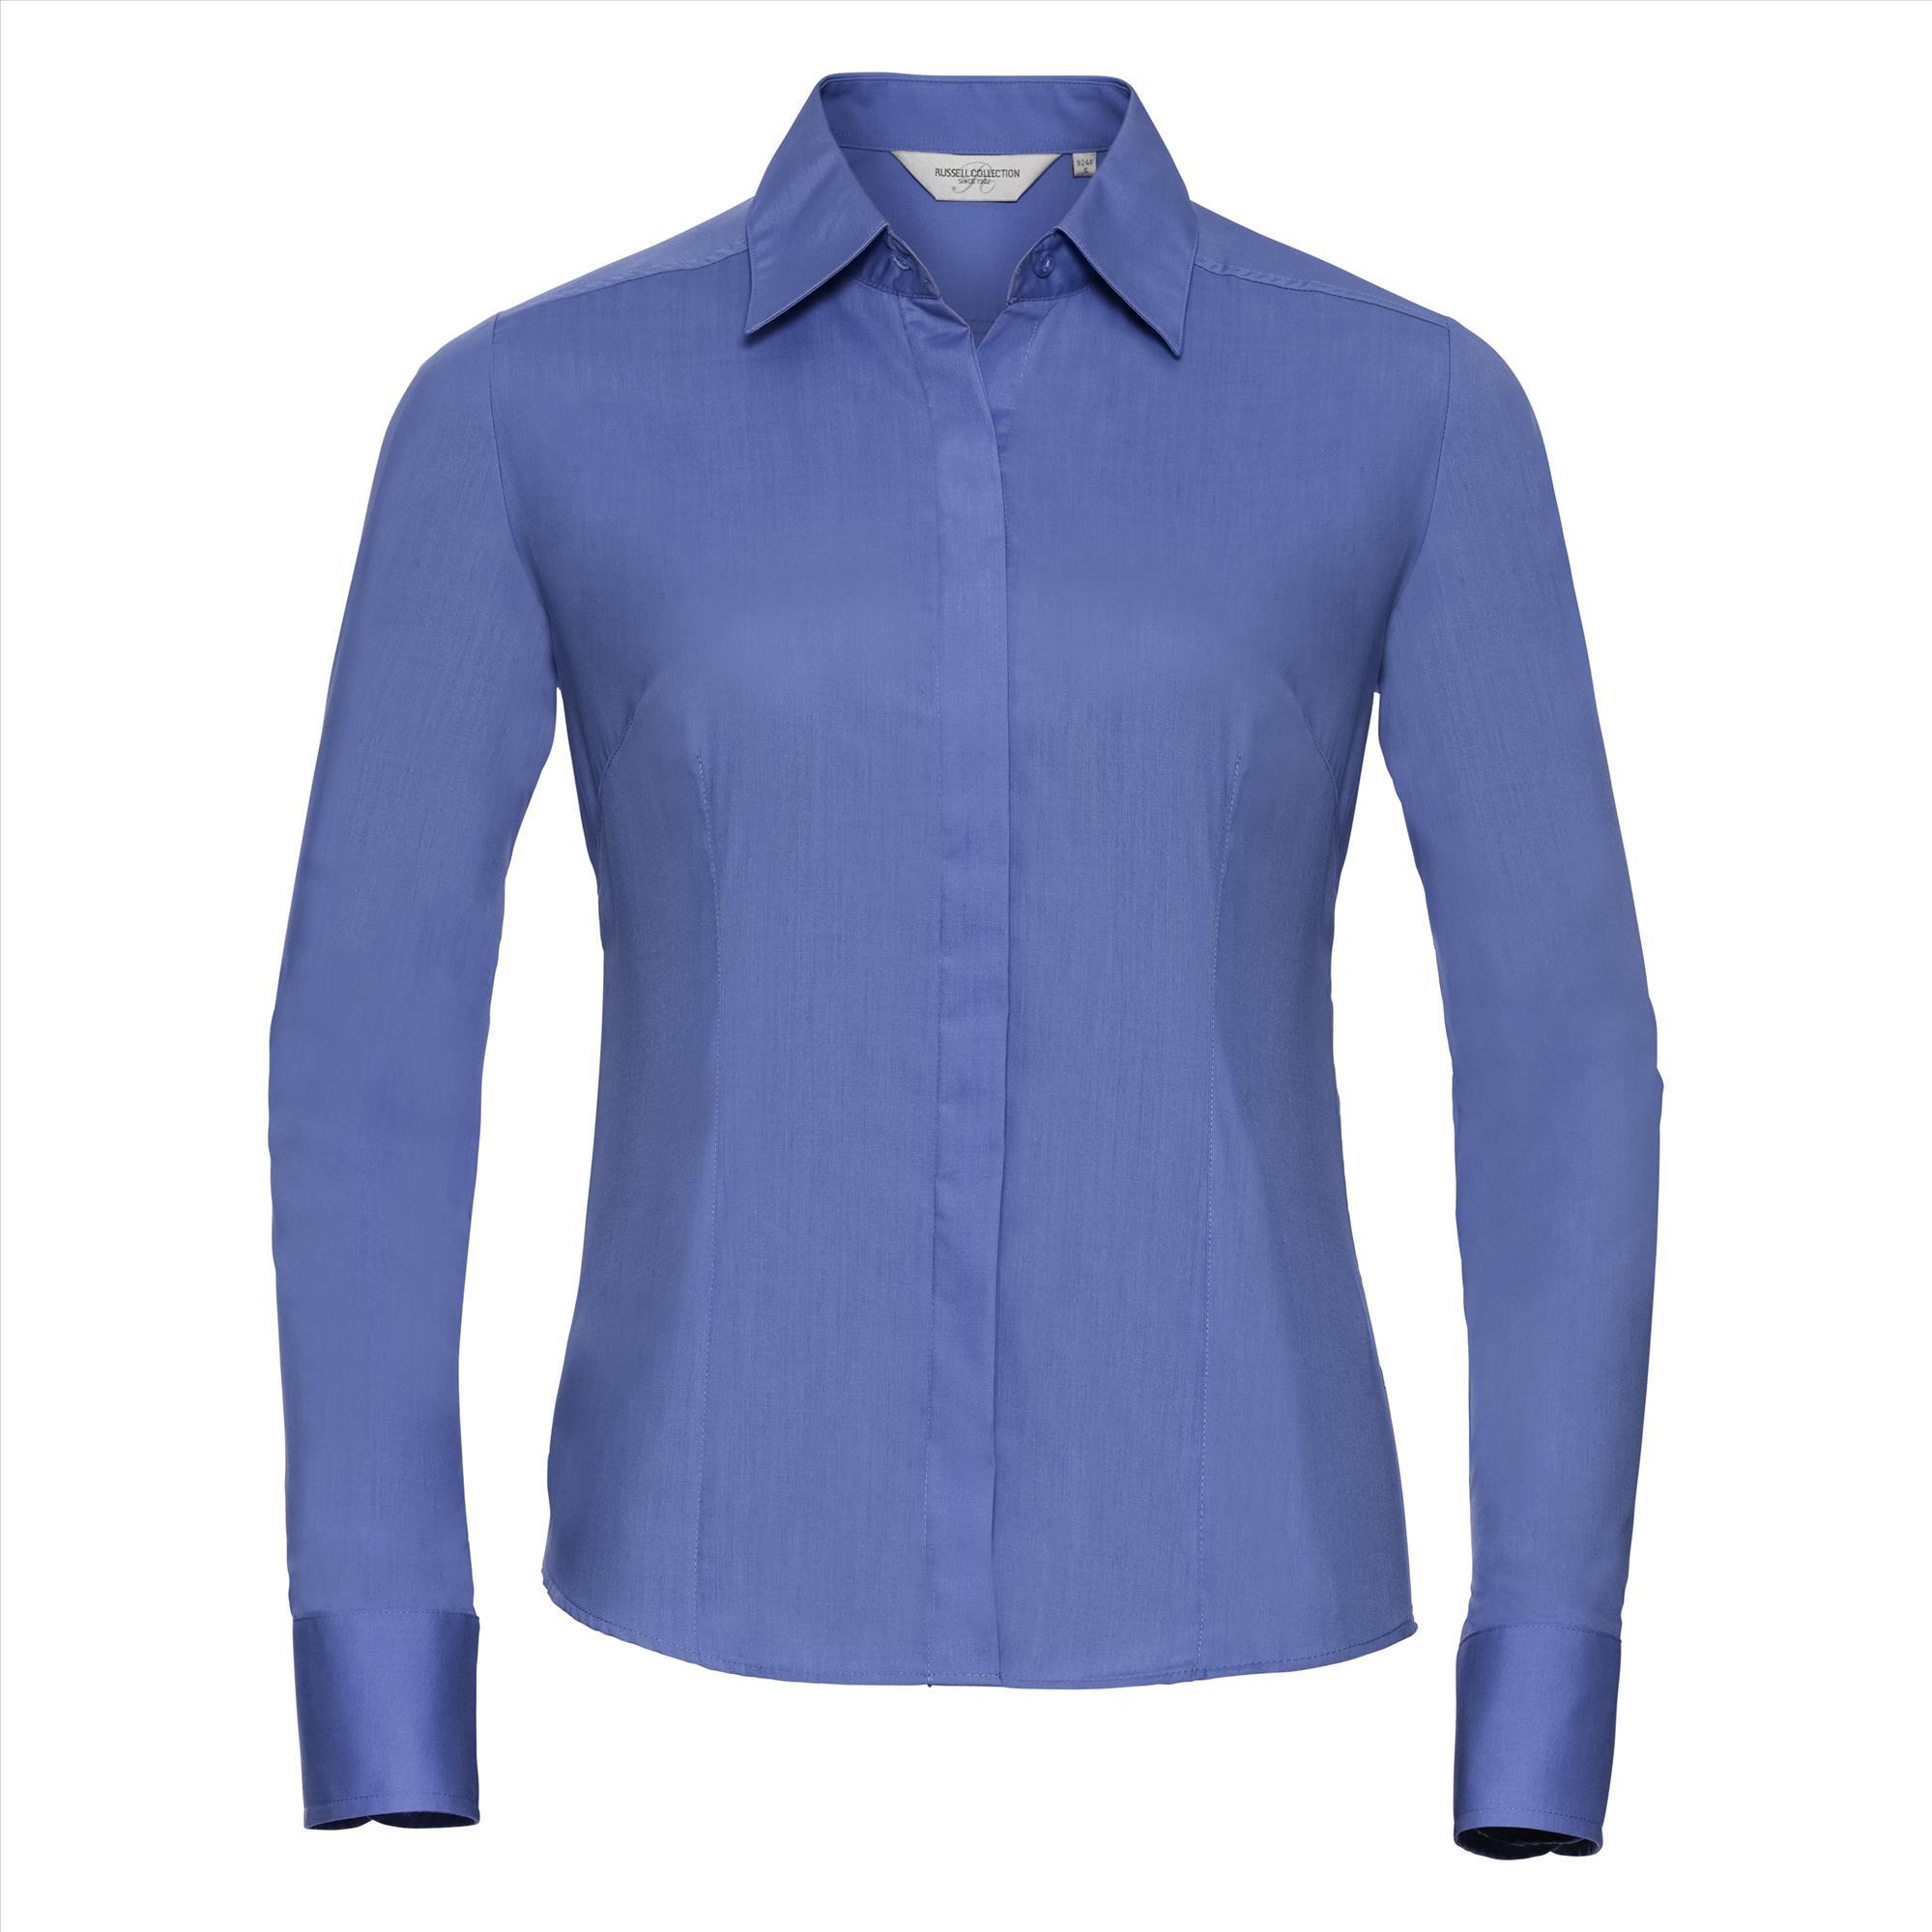 Dames blouse corporate blue te bedrukken te personaliseren met bedrijfslogo